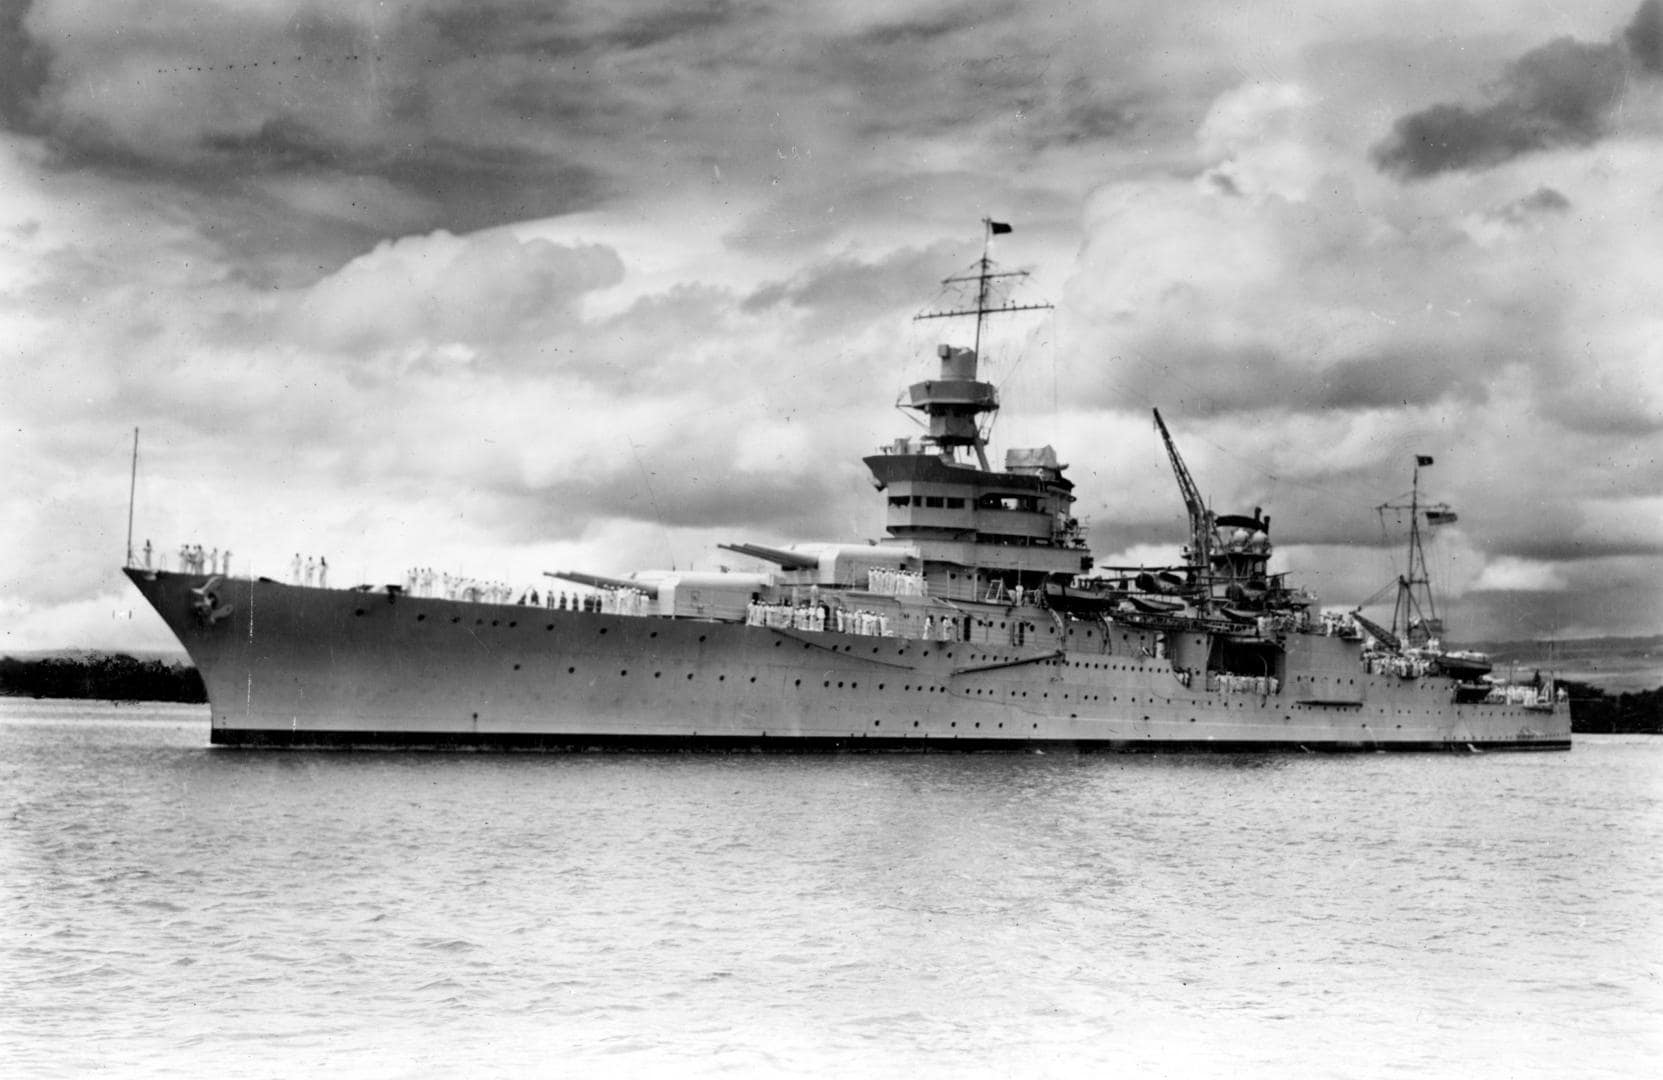 Wrak van oorlogsschip USS Indianapolis uit WO II gevonden